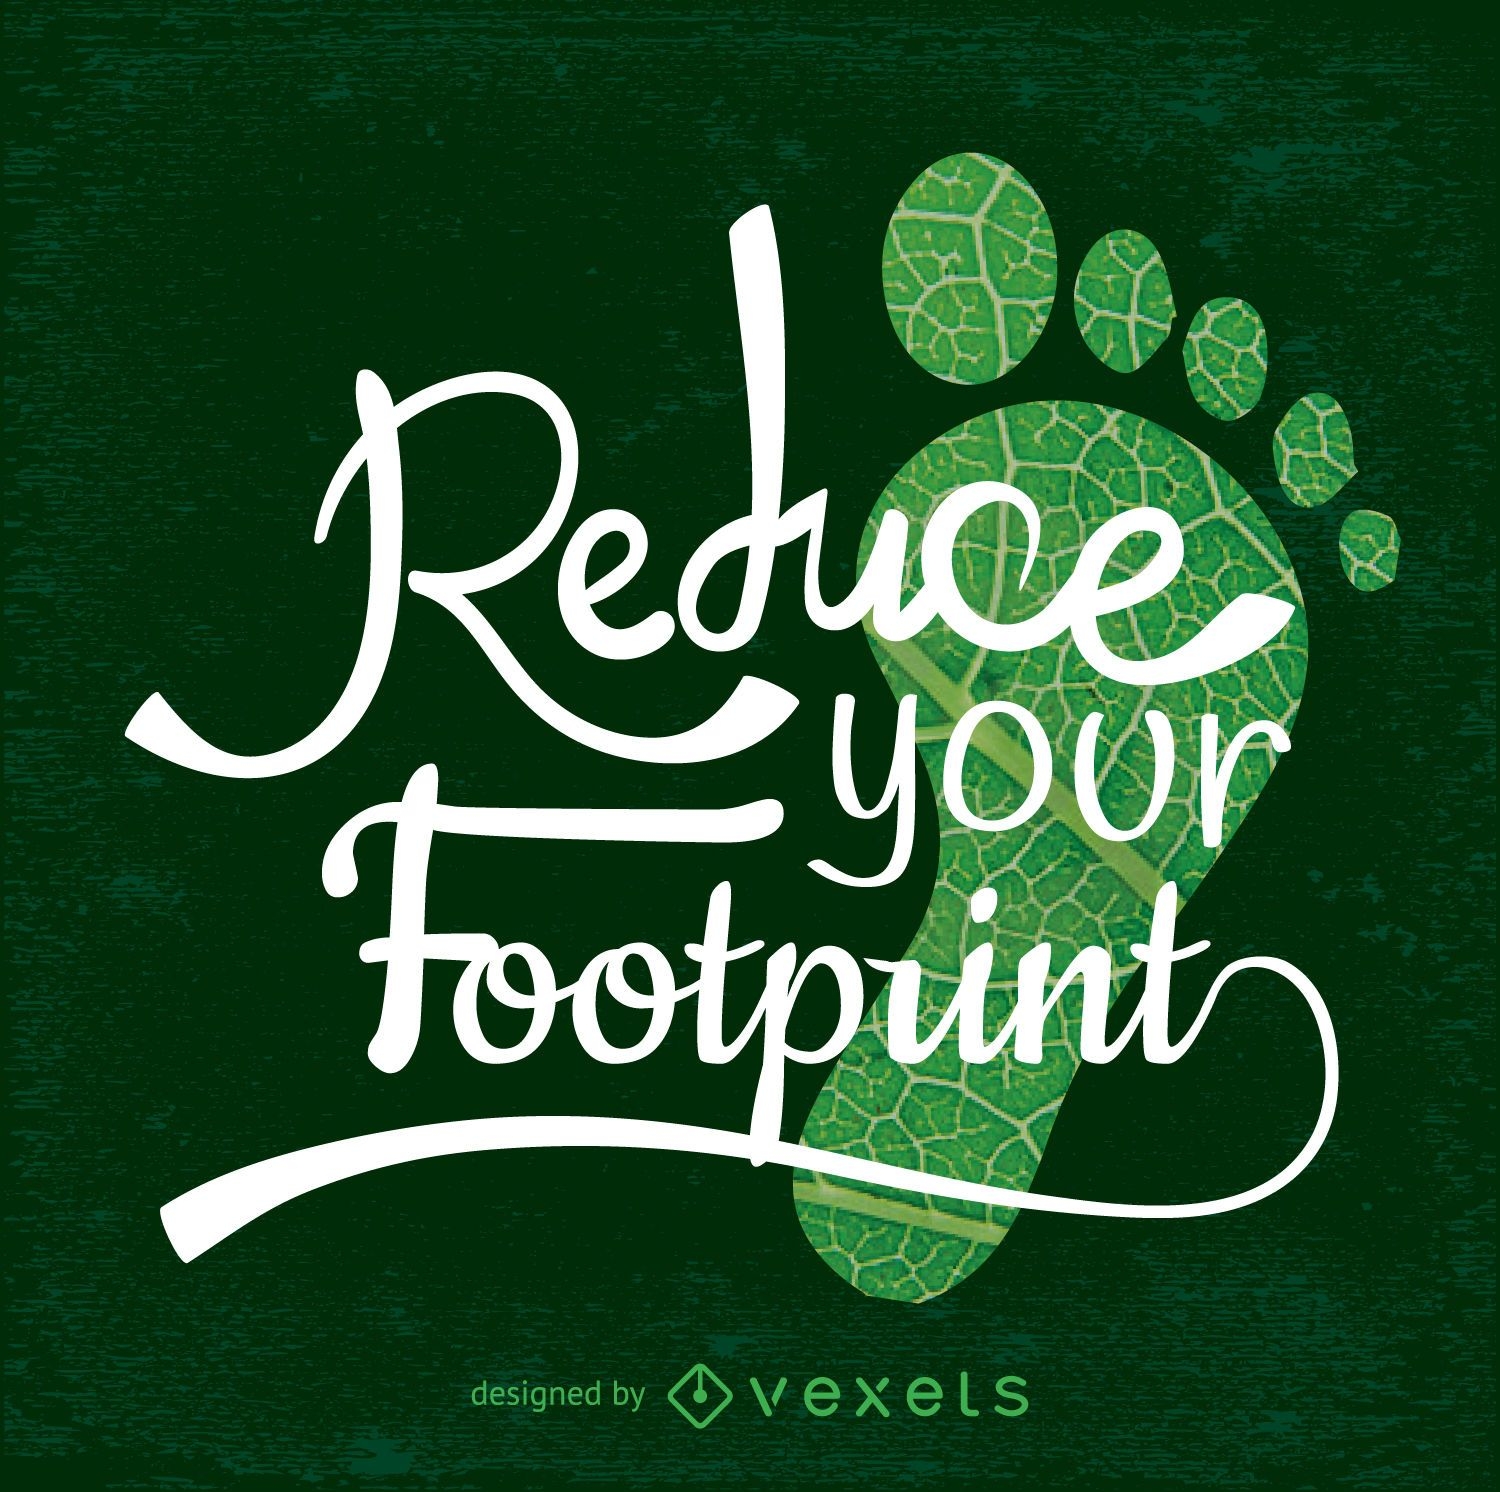 Reduzieren Sie Ihr Footprint-Earth Day-Design